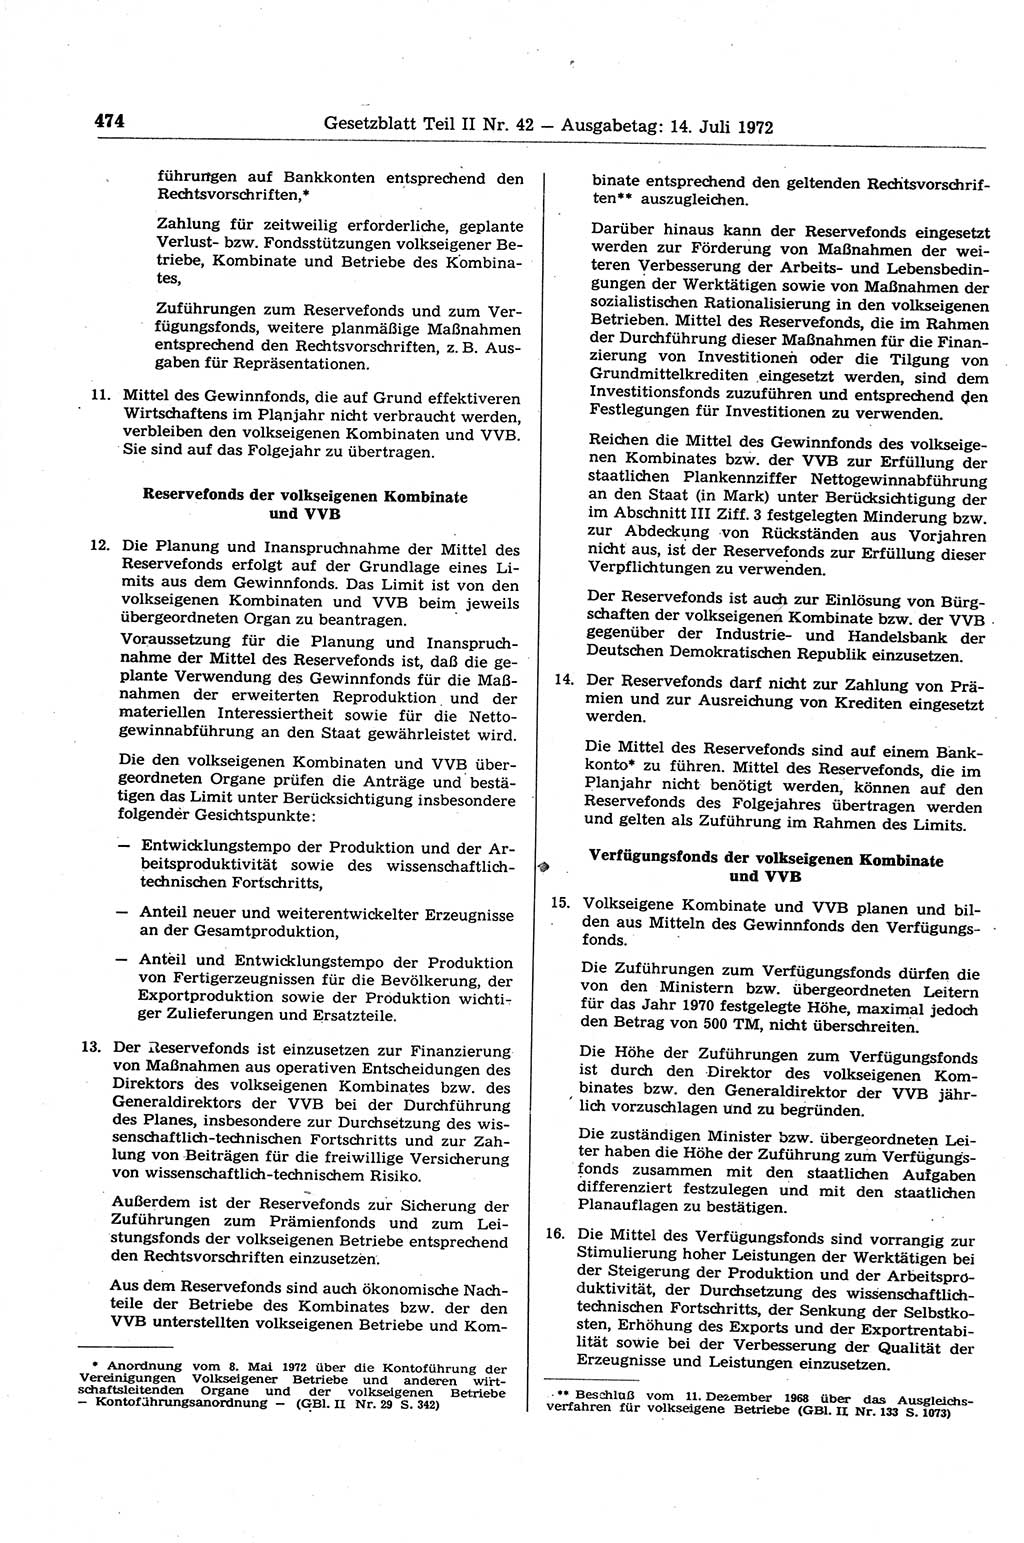 Gesetzblatt (GBl.) der Deutschen Demokratischen Republik (DDR) Teil ⅠⅠ 1972, Seite 474 (GBl. DDR ⅠⅠ 1972, S. 474)